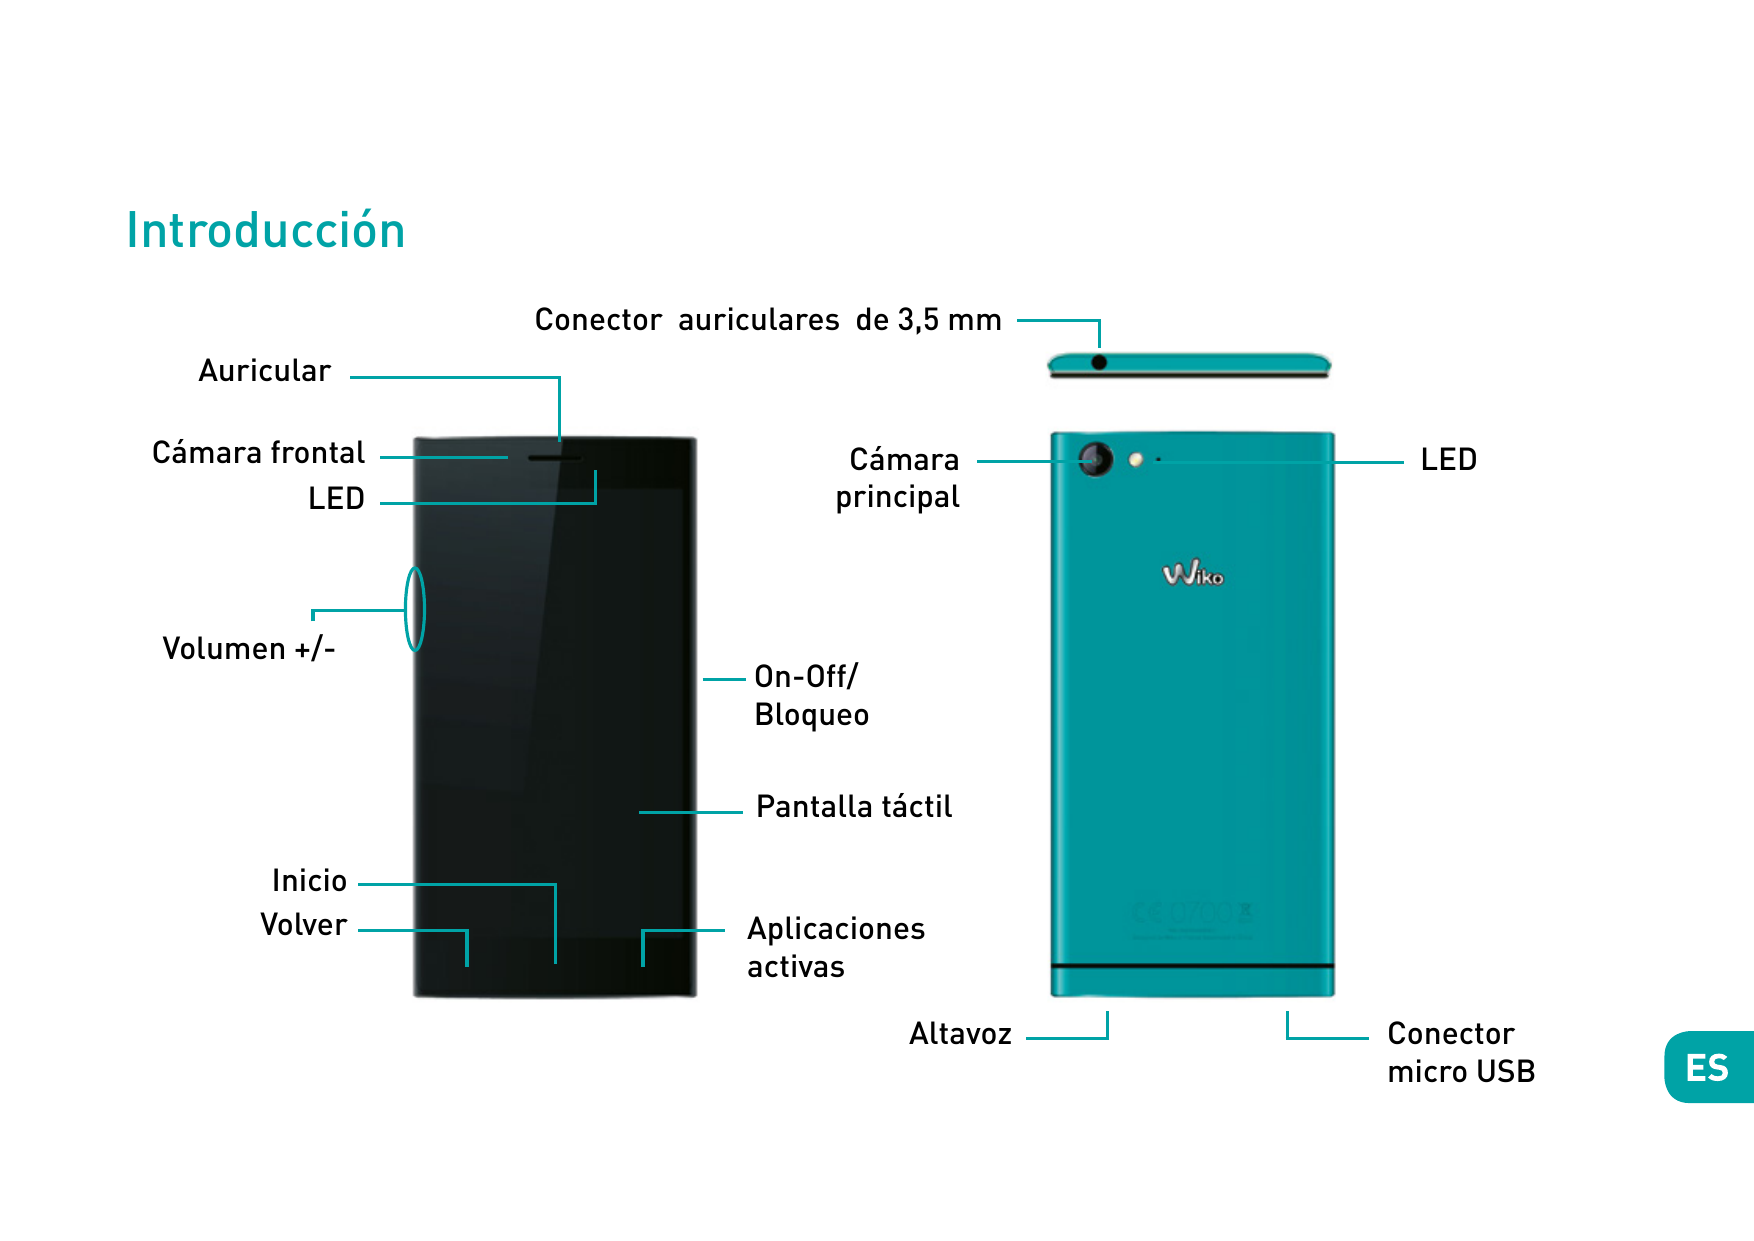 IntroducciónConector auriculares de 3,5 mmAuricularCámara frontalLEDVolumen +/-CámaraprincipalLEDOn-Off/BloqueoPantalla táctilIn